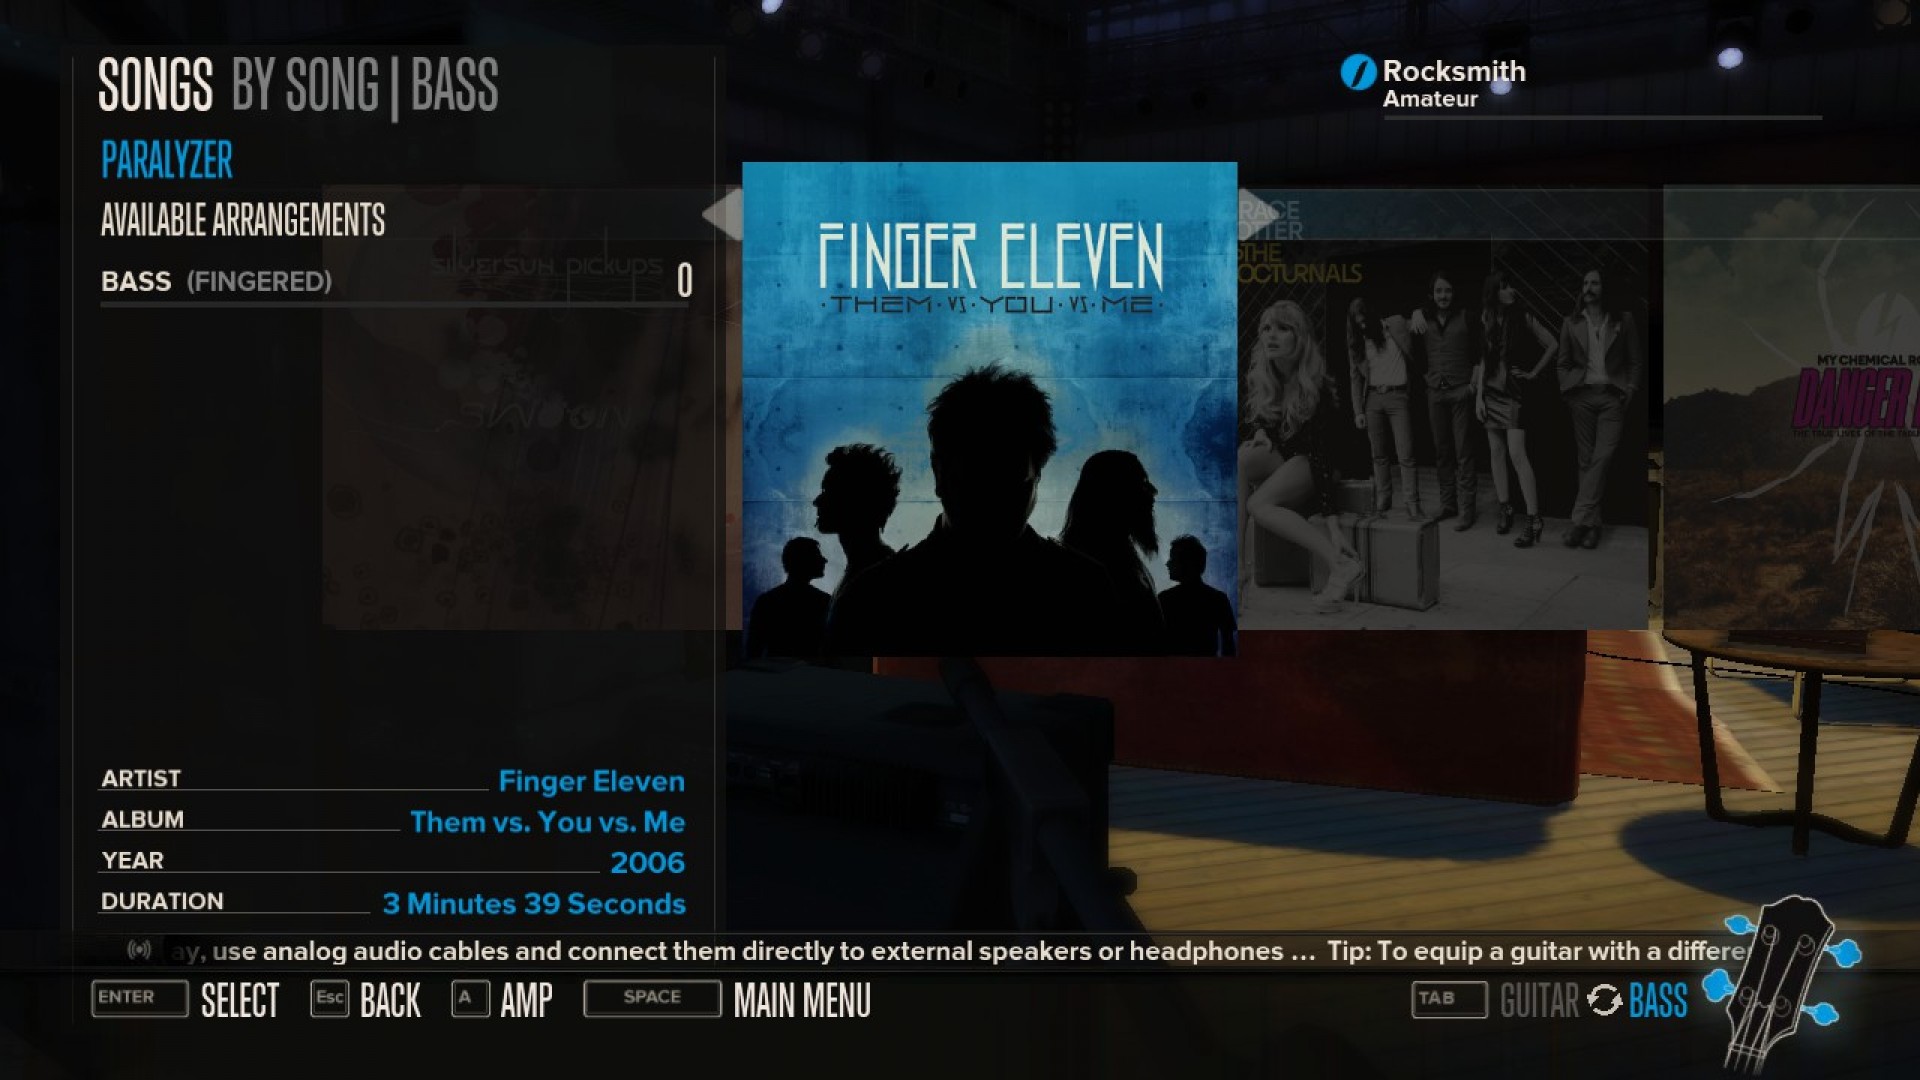 Rocksmith - Finger Eleven - Paralyzer screenshot